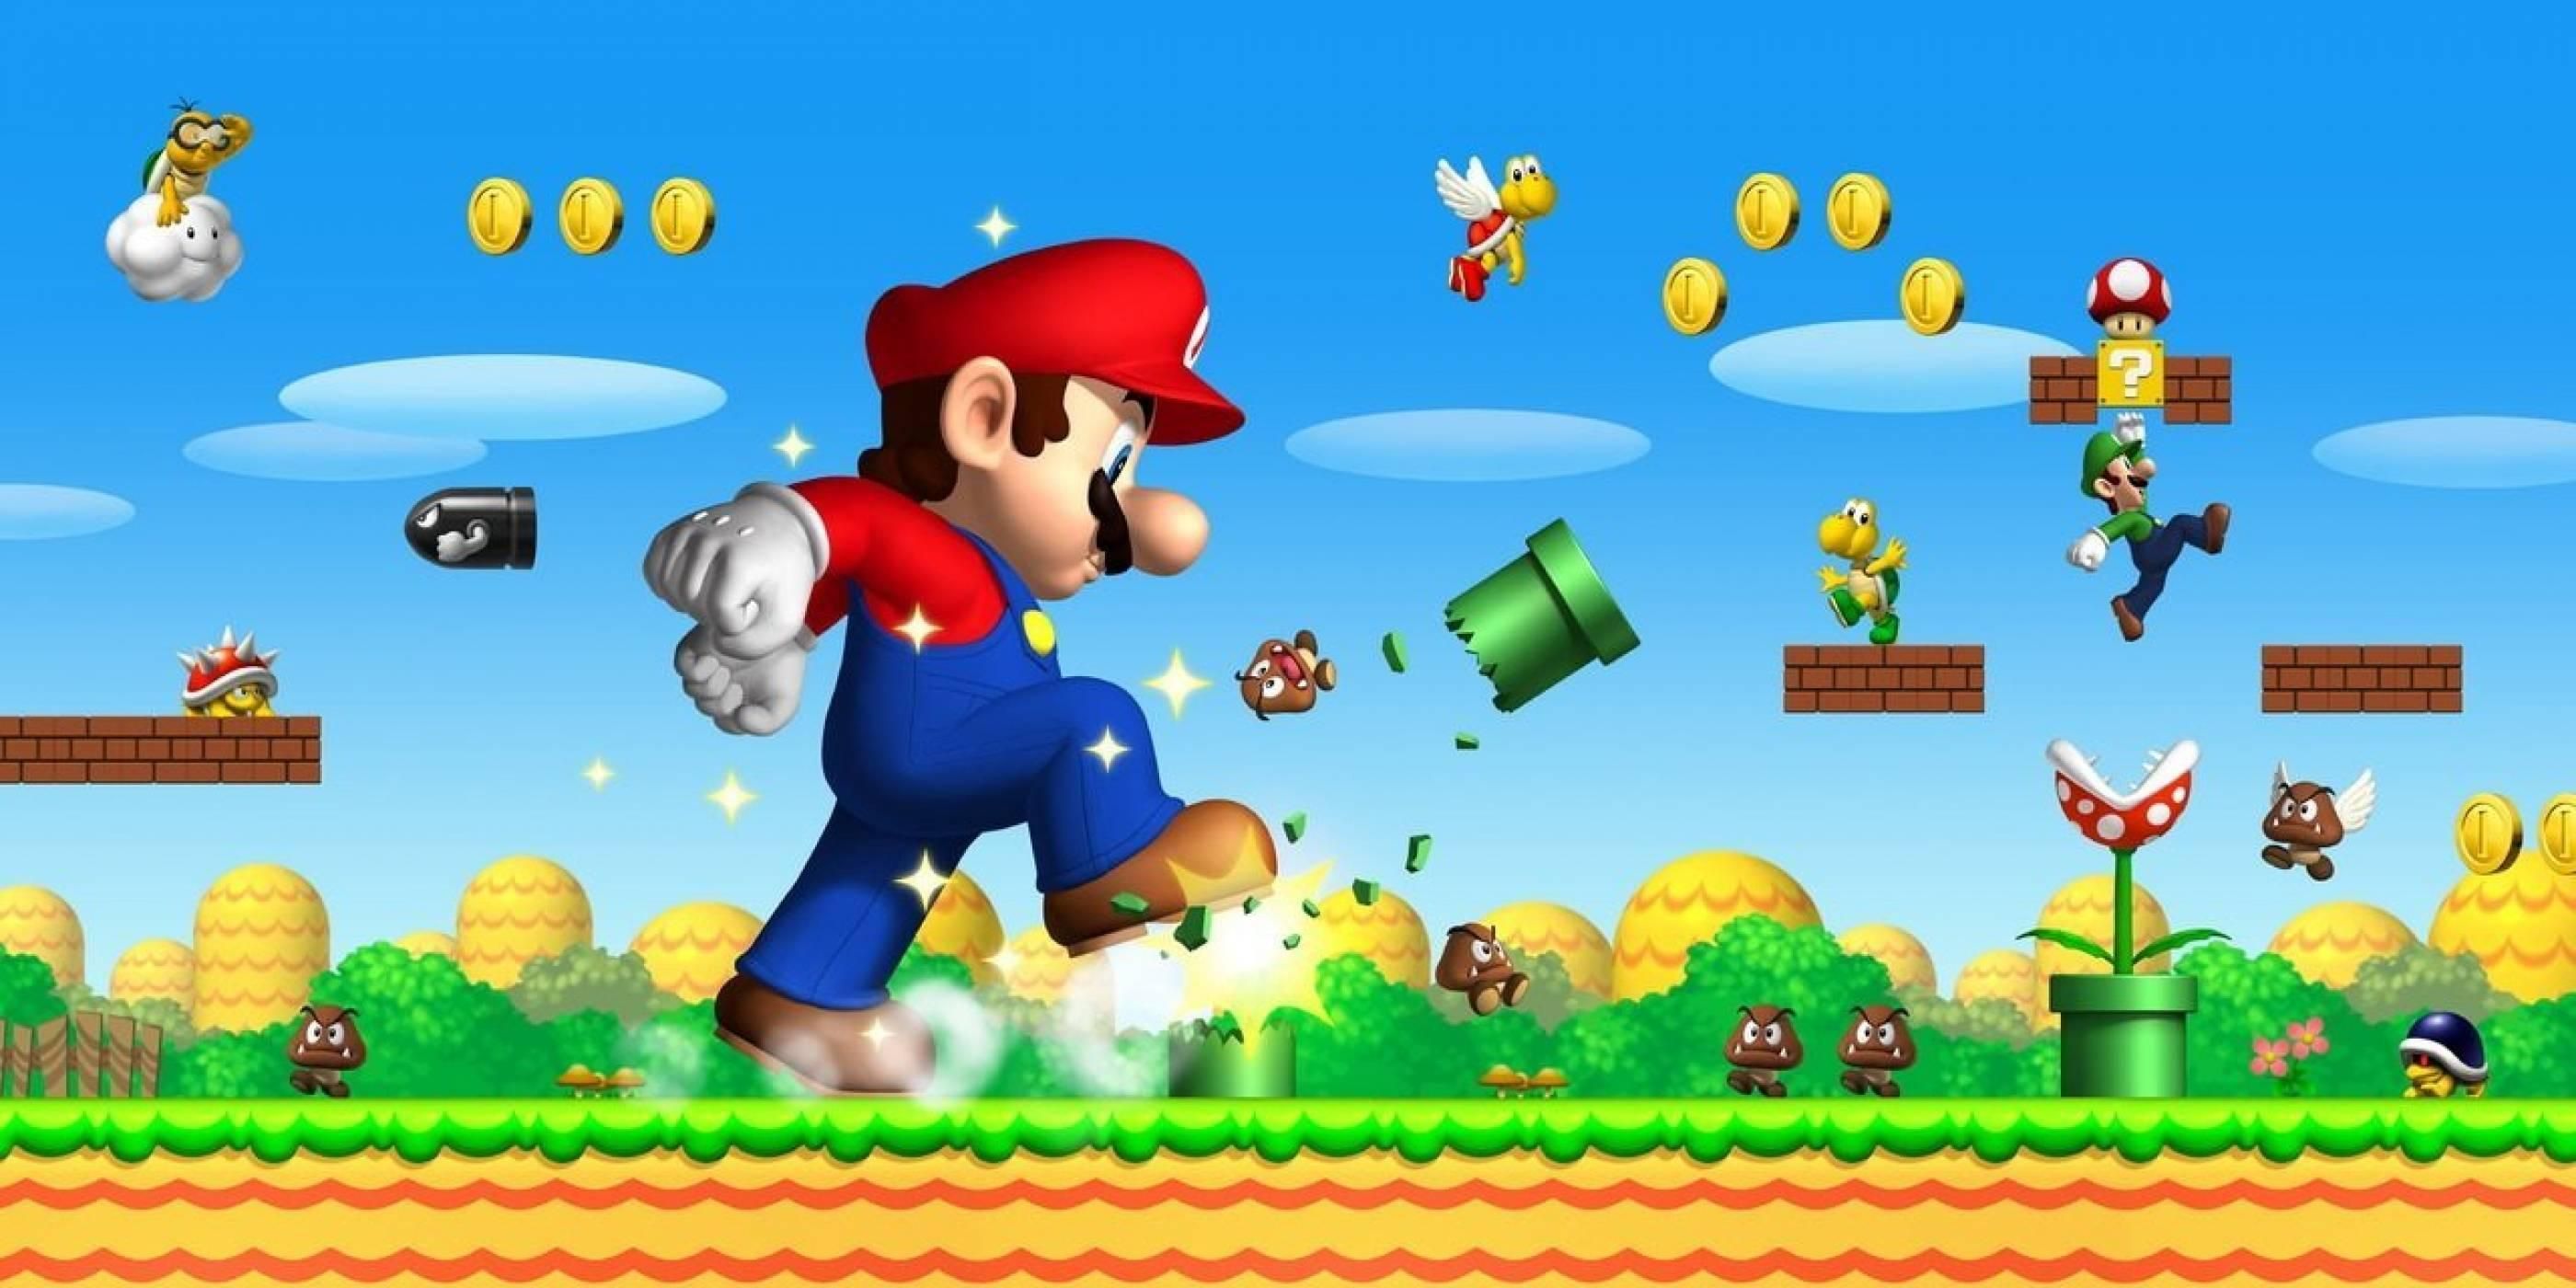 Спідранер встановив рекорд зі швидкісного проходження Super Mario Bros. із зав'язаними очима